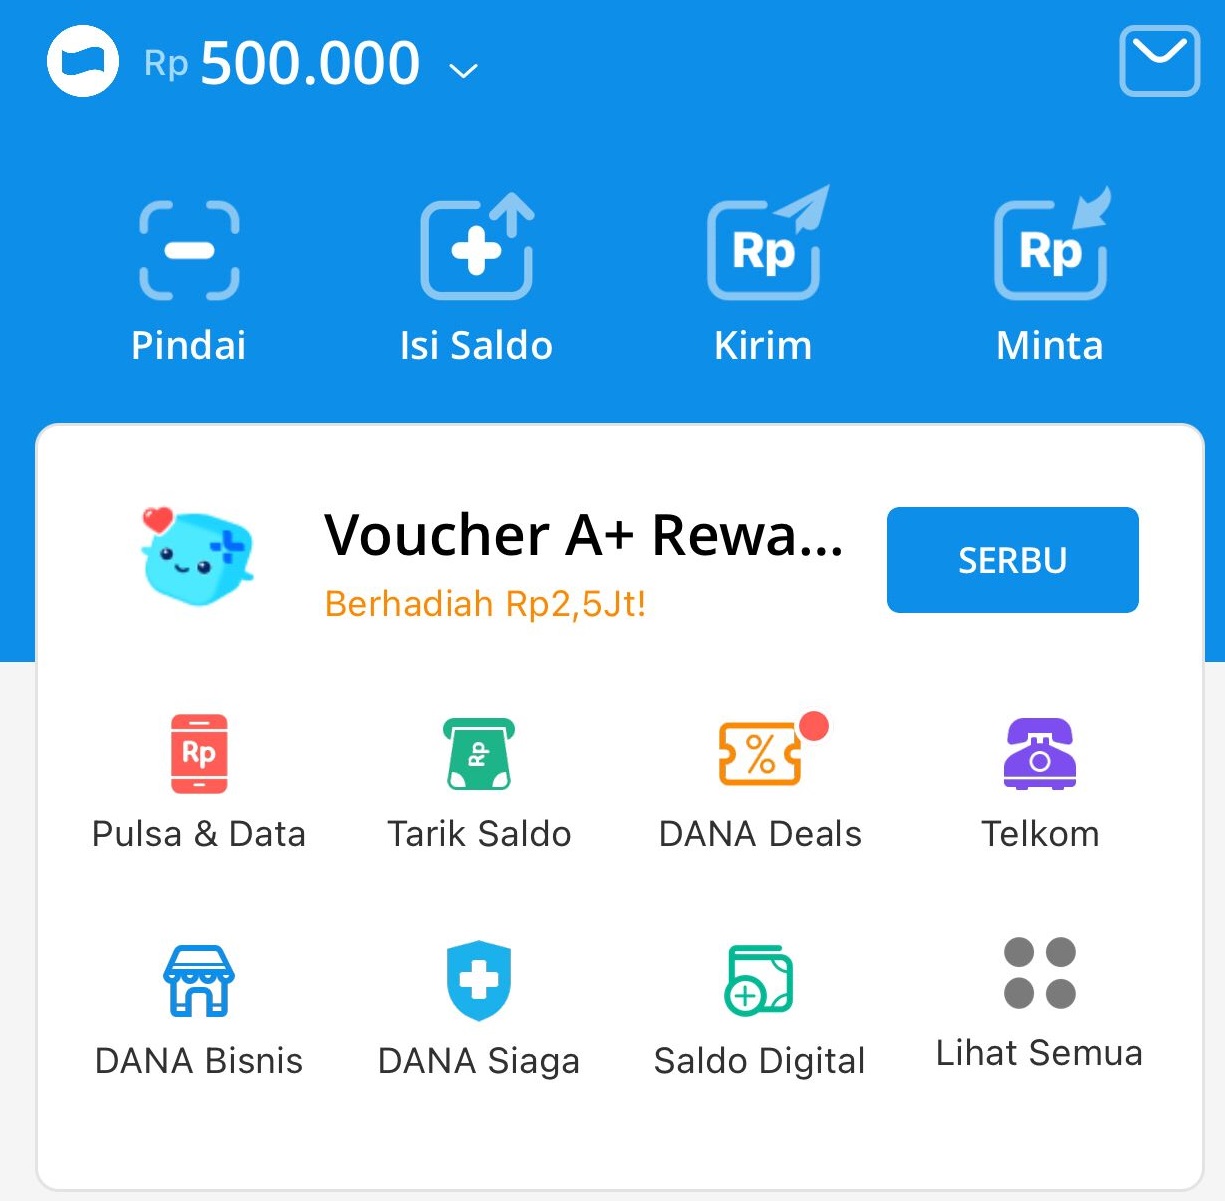 TERBUKTI MEMBAYAR: Hanya dengan klik link ini kamu bisa dapat saldo DANA gratis hingga Rp 500 ribu setiap harinya. (ILUSTRASI)